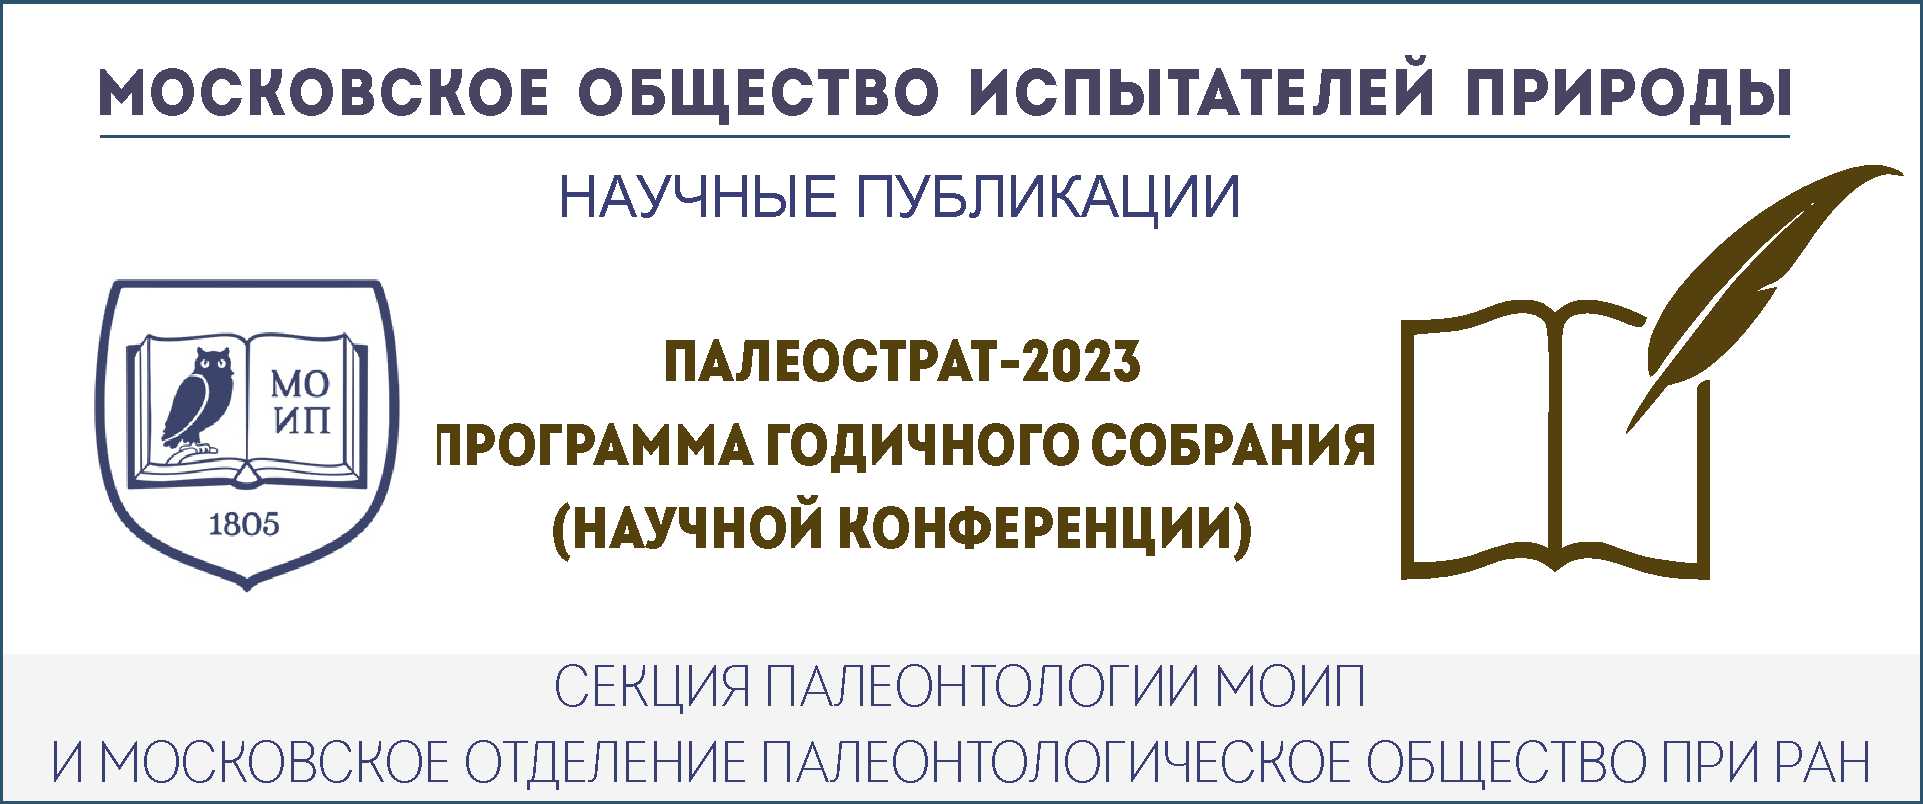 ПРОГРАММА Годичного собрания (научной конференции)  ПАЛЕОСТРАТ-2023